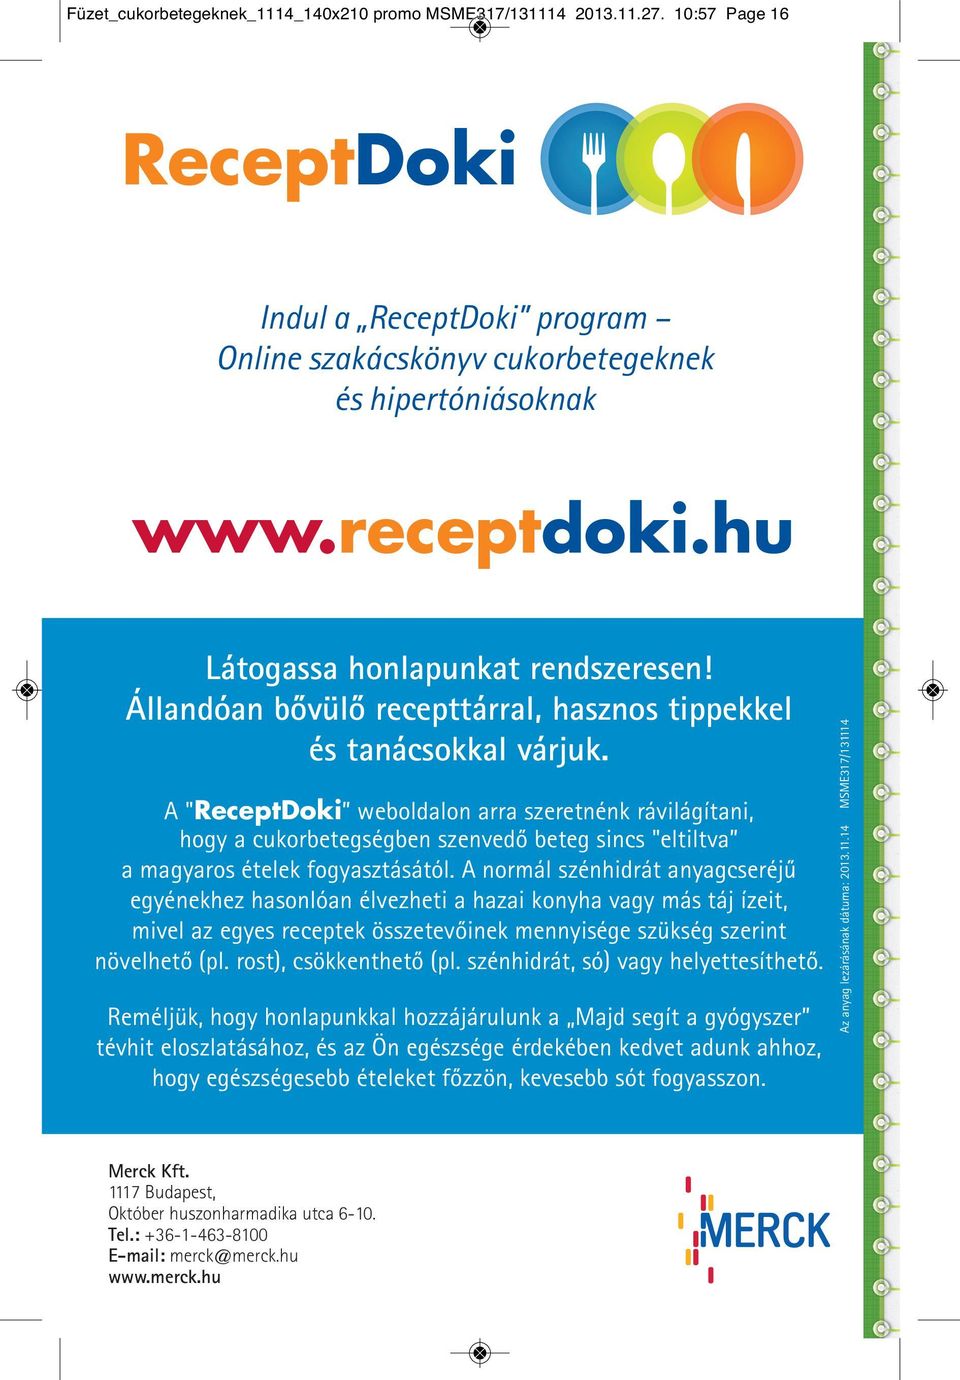 A "ReceptDoki weboldalon arra szeretnénk rávilágítani, hogy a cukorbetegségben szenvedő beteg sincs "eltiltva a magyaros ételek fogyasztásától.